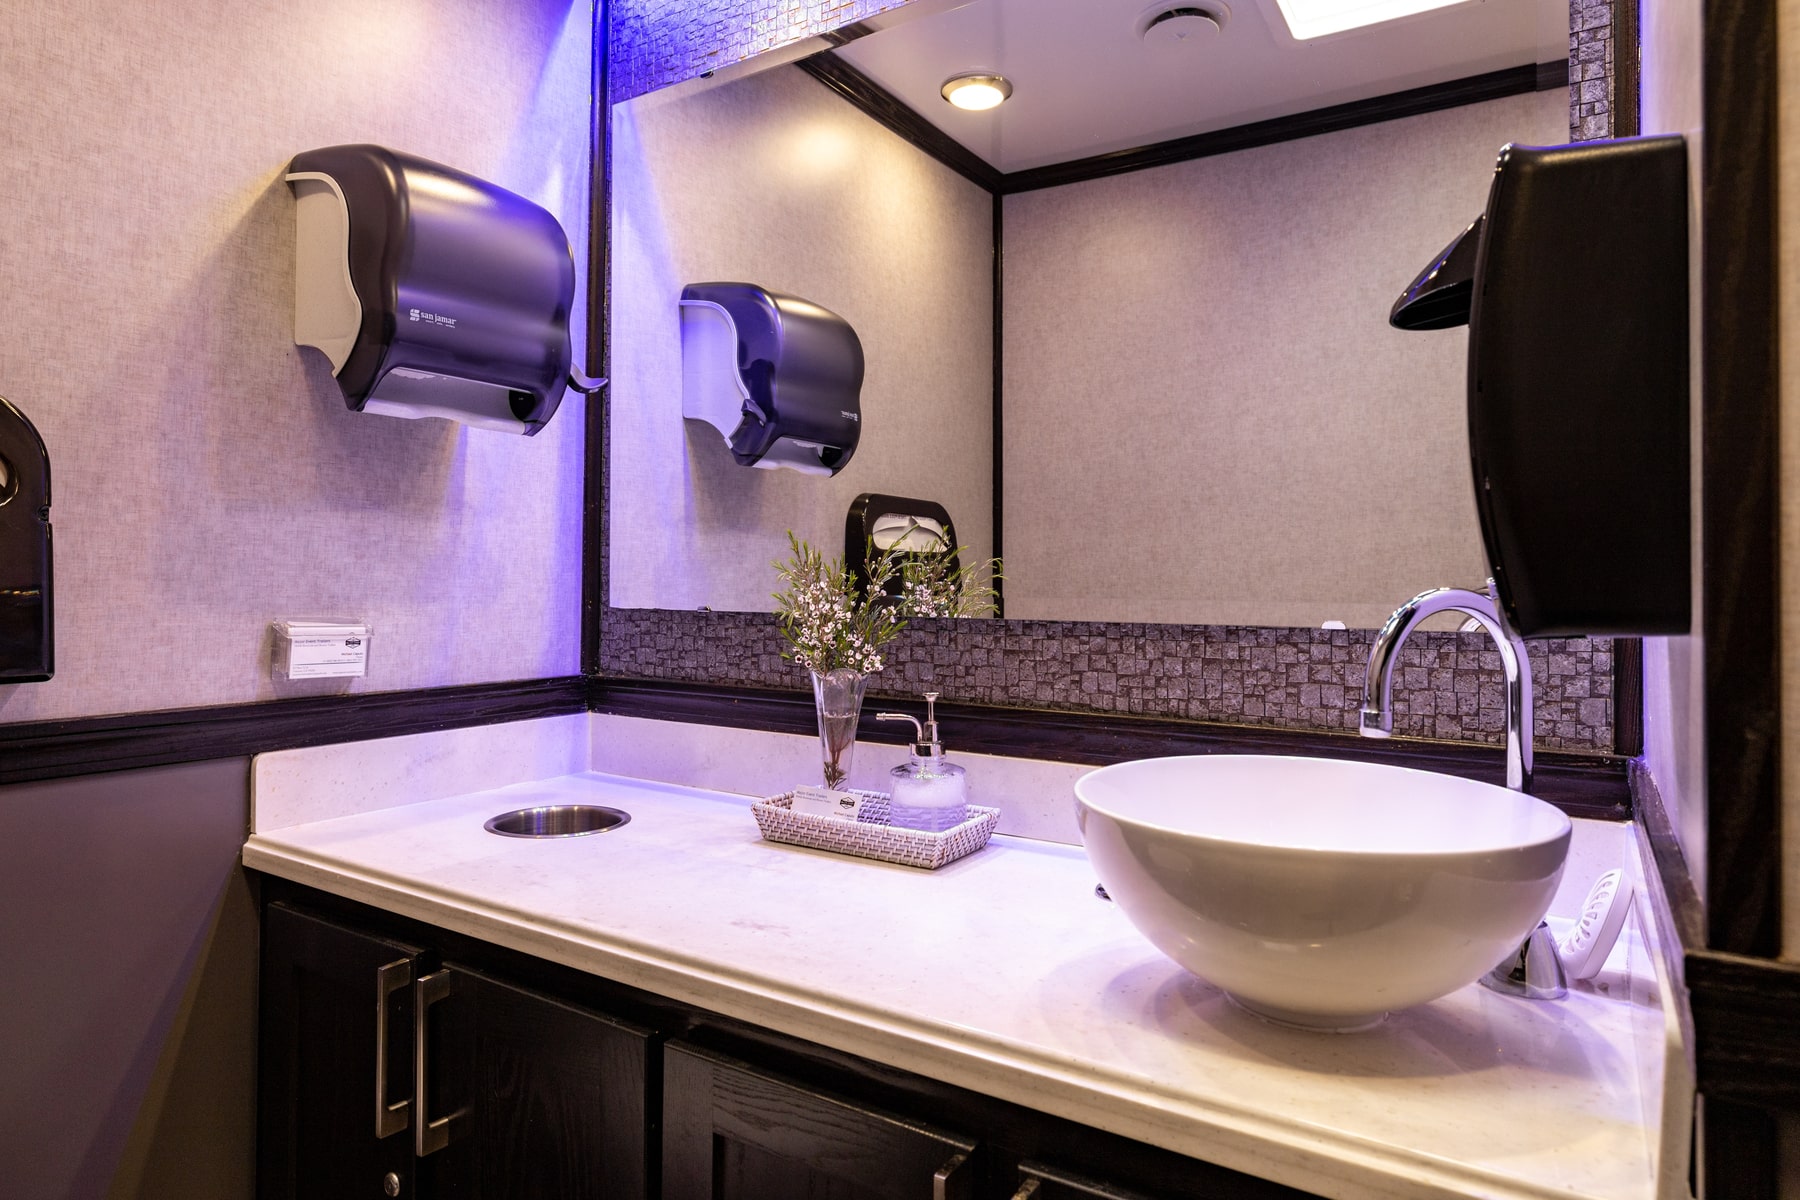 5-Station Luxury Restroom Trailer Rental – Interior View 2